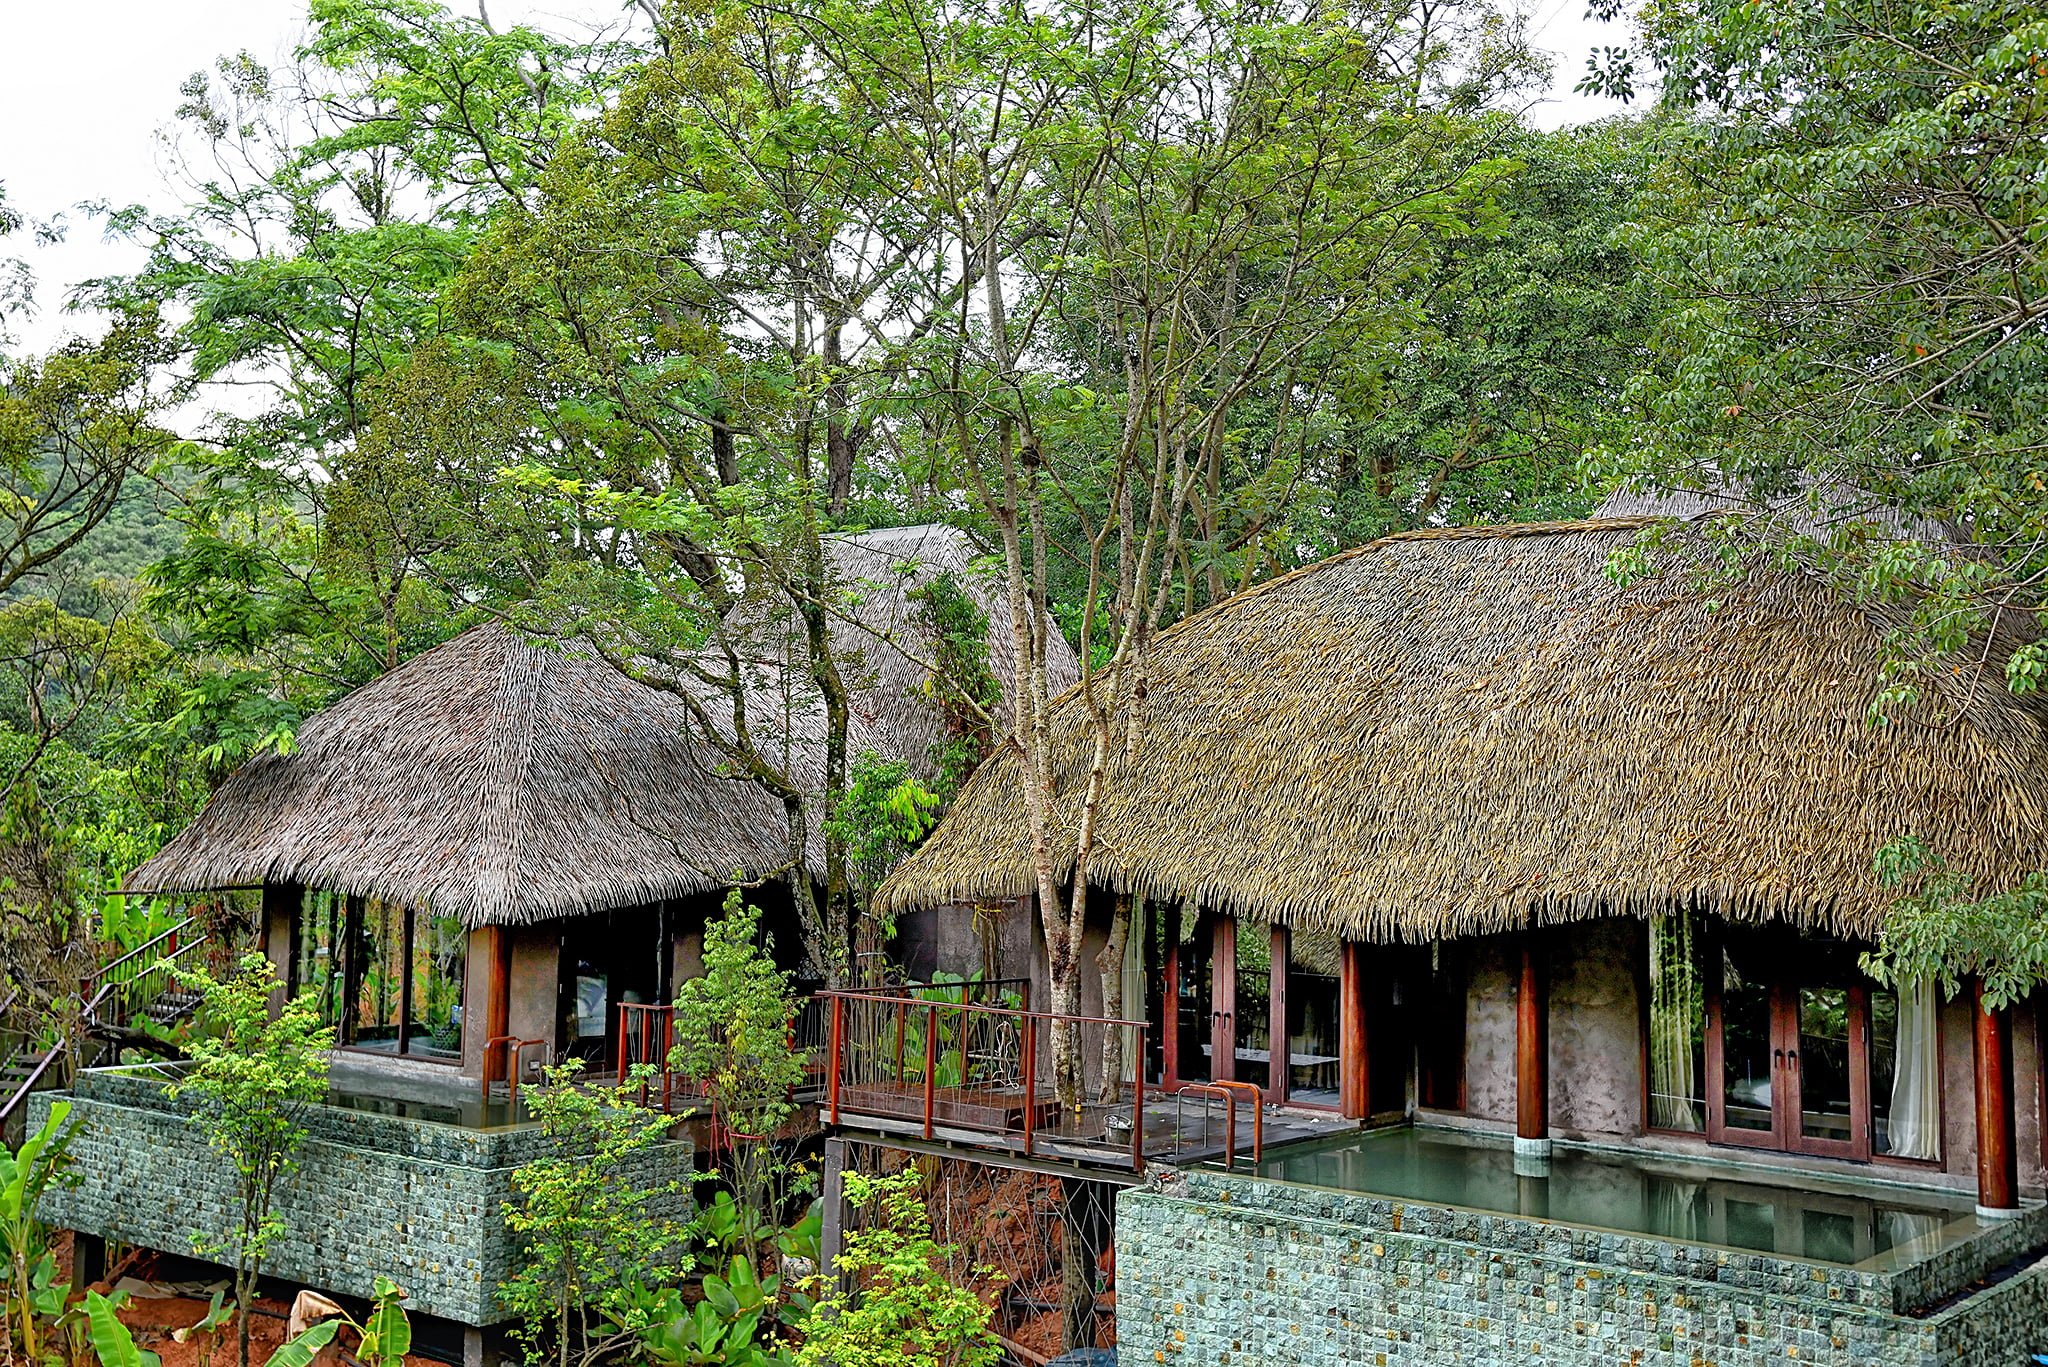 Ngôi nhà lợp mái rạ có cấu trúc hình tròn để chống chịu bão lũ ở Việt Nam